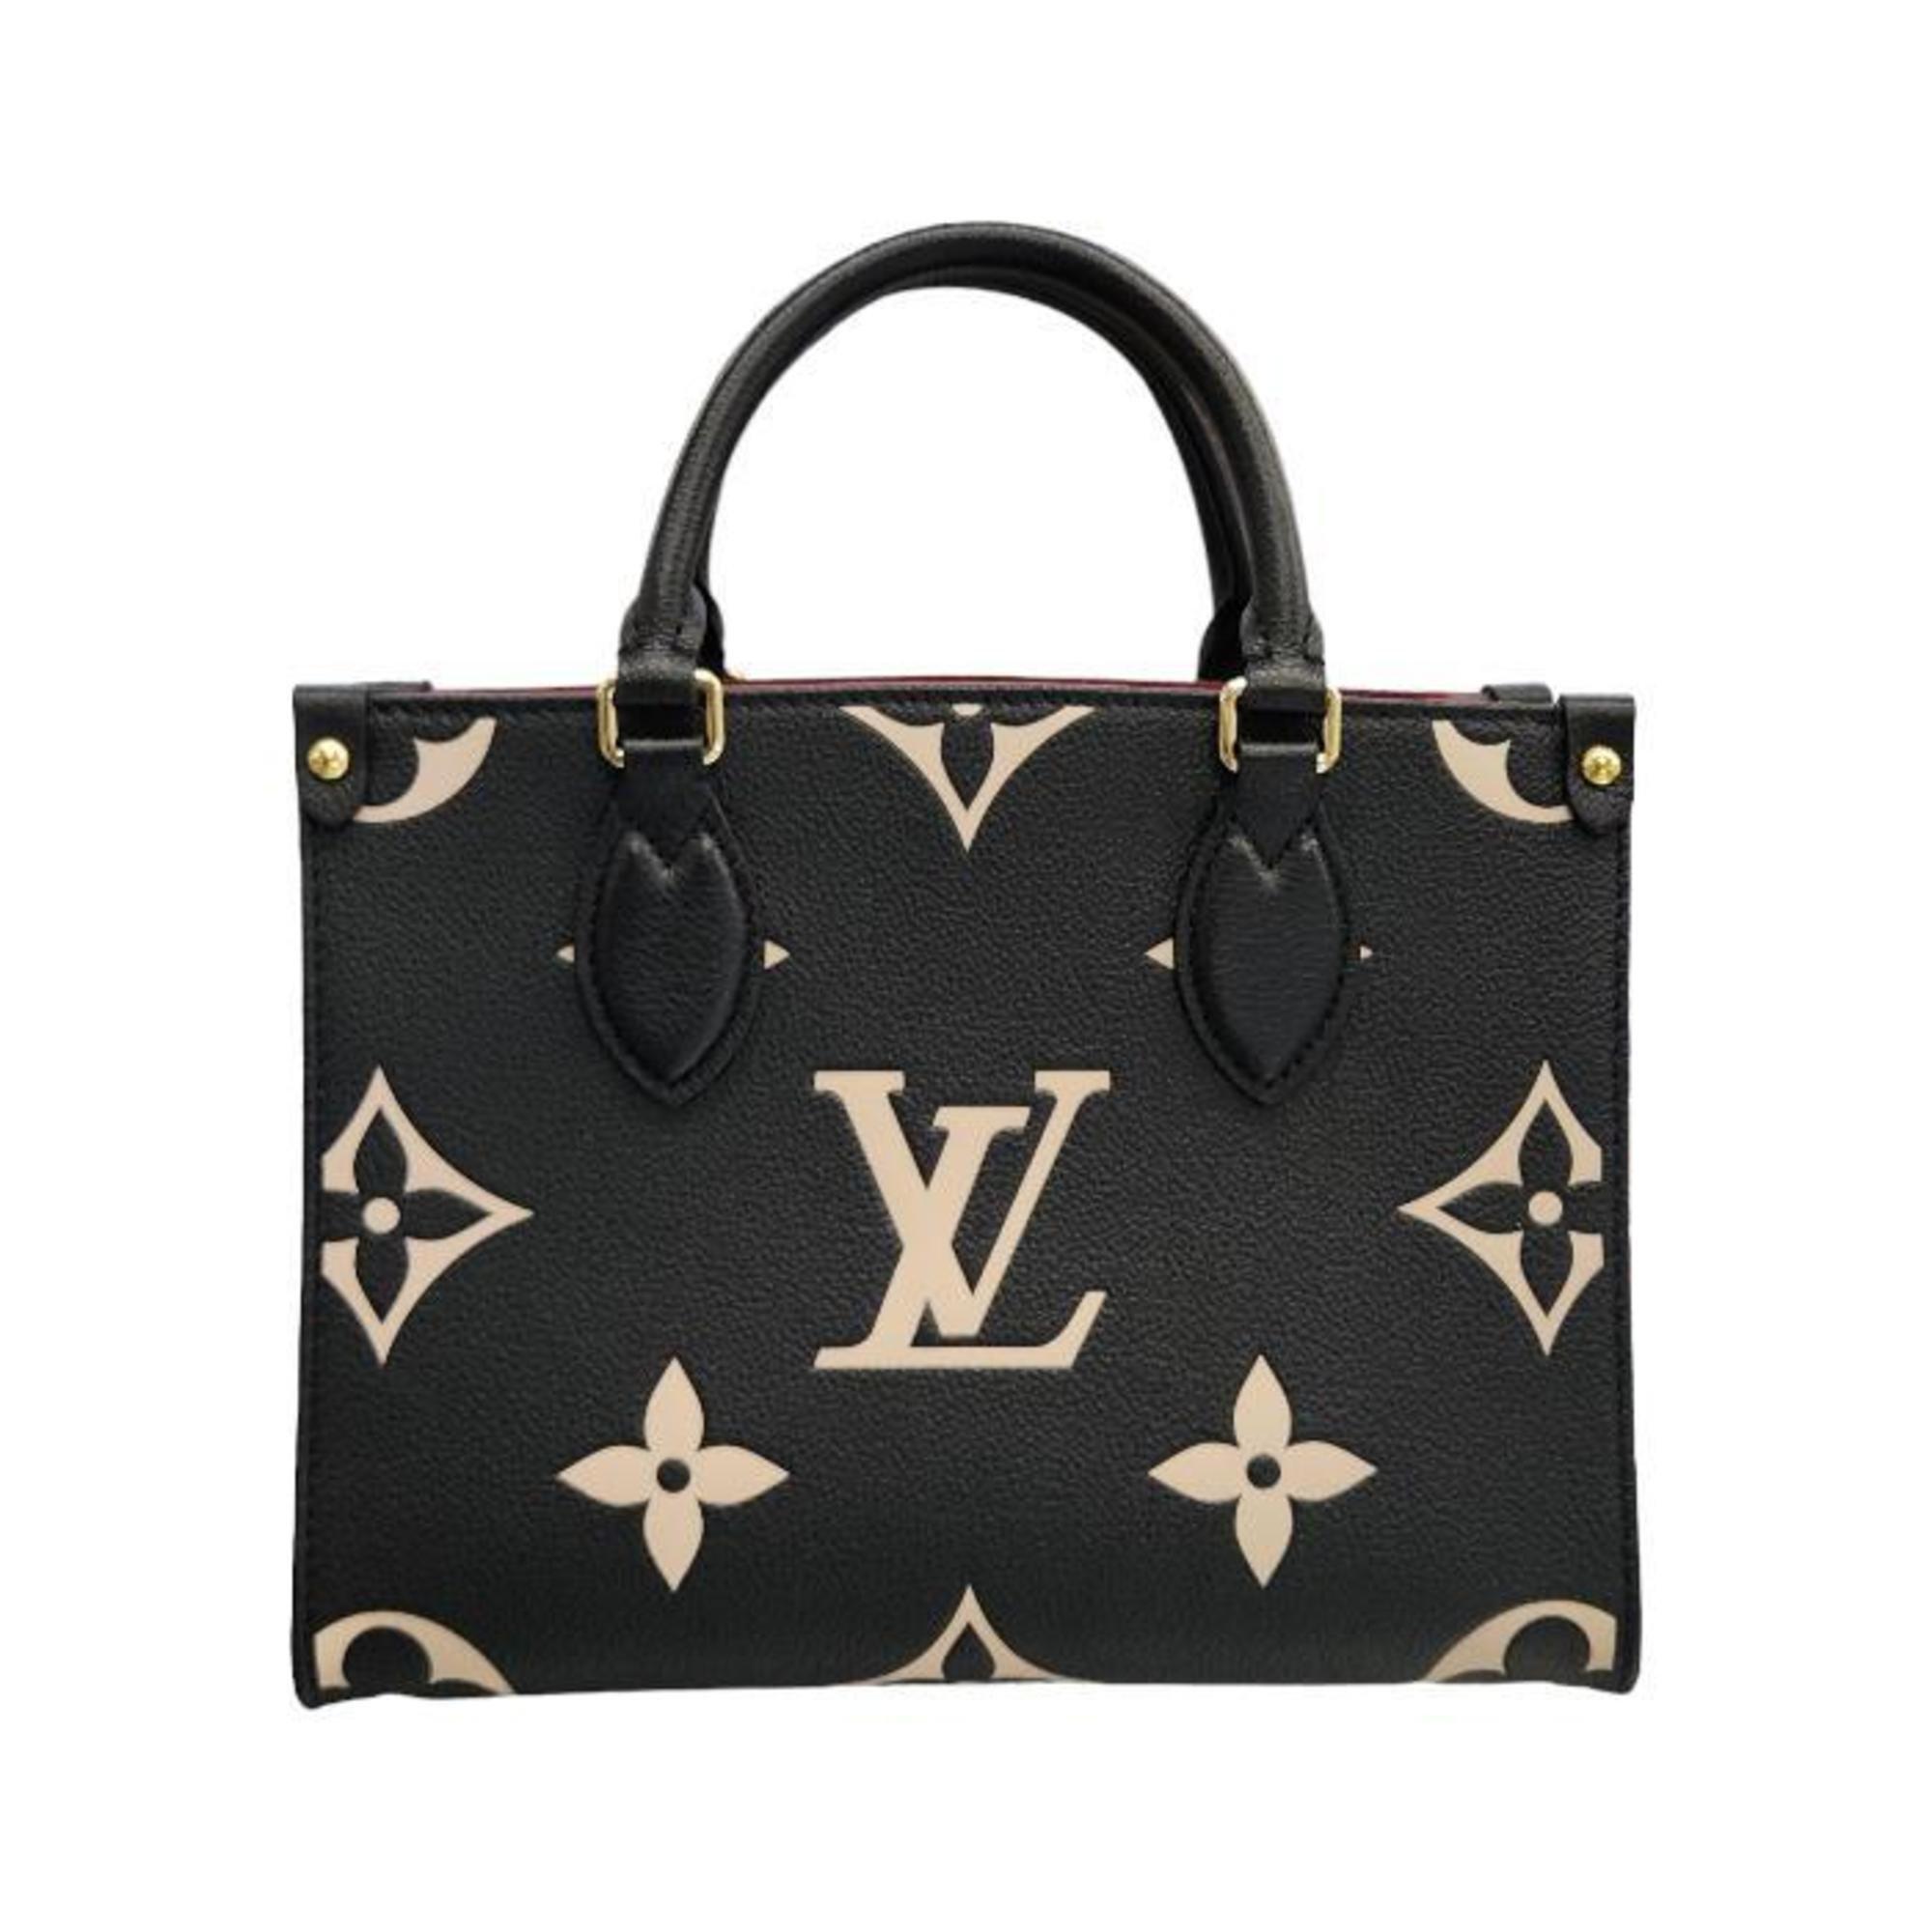 LOUIS VUITTON Louis Vuitton Bicolor Monogram Empreinte On the Go PM Handbag Women's 2way Shoulder Black/Beige M45659